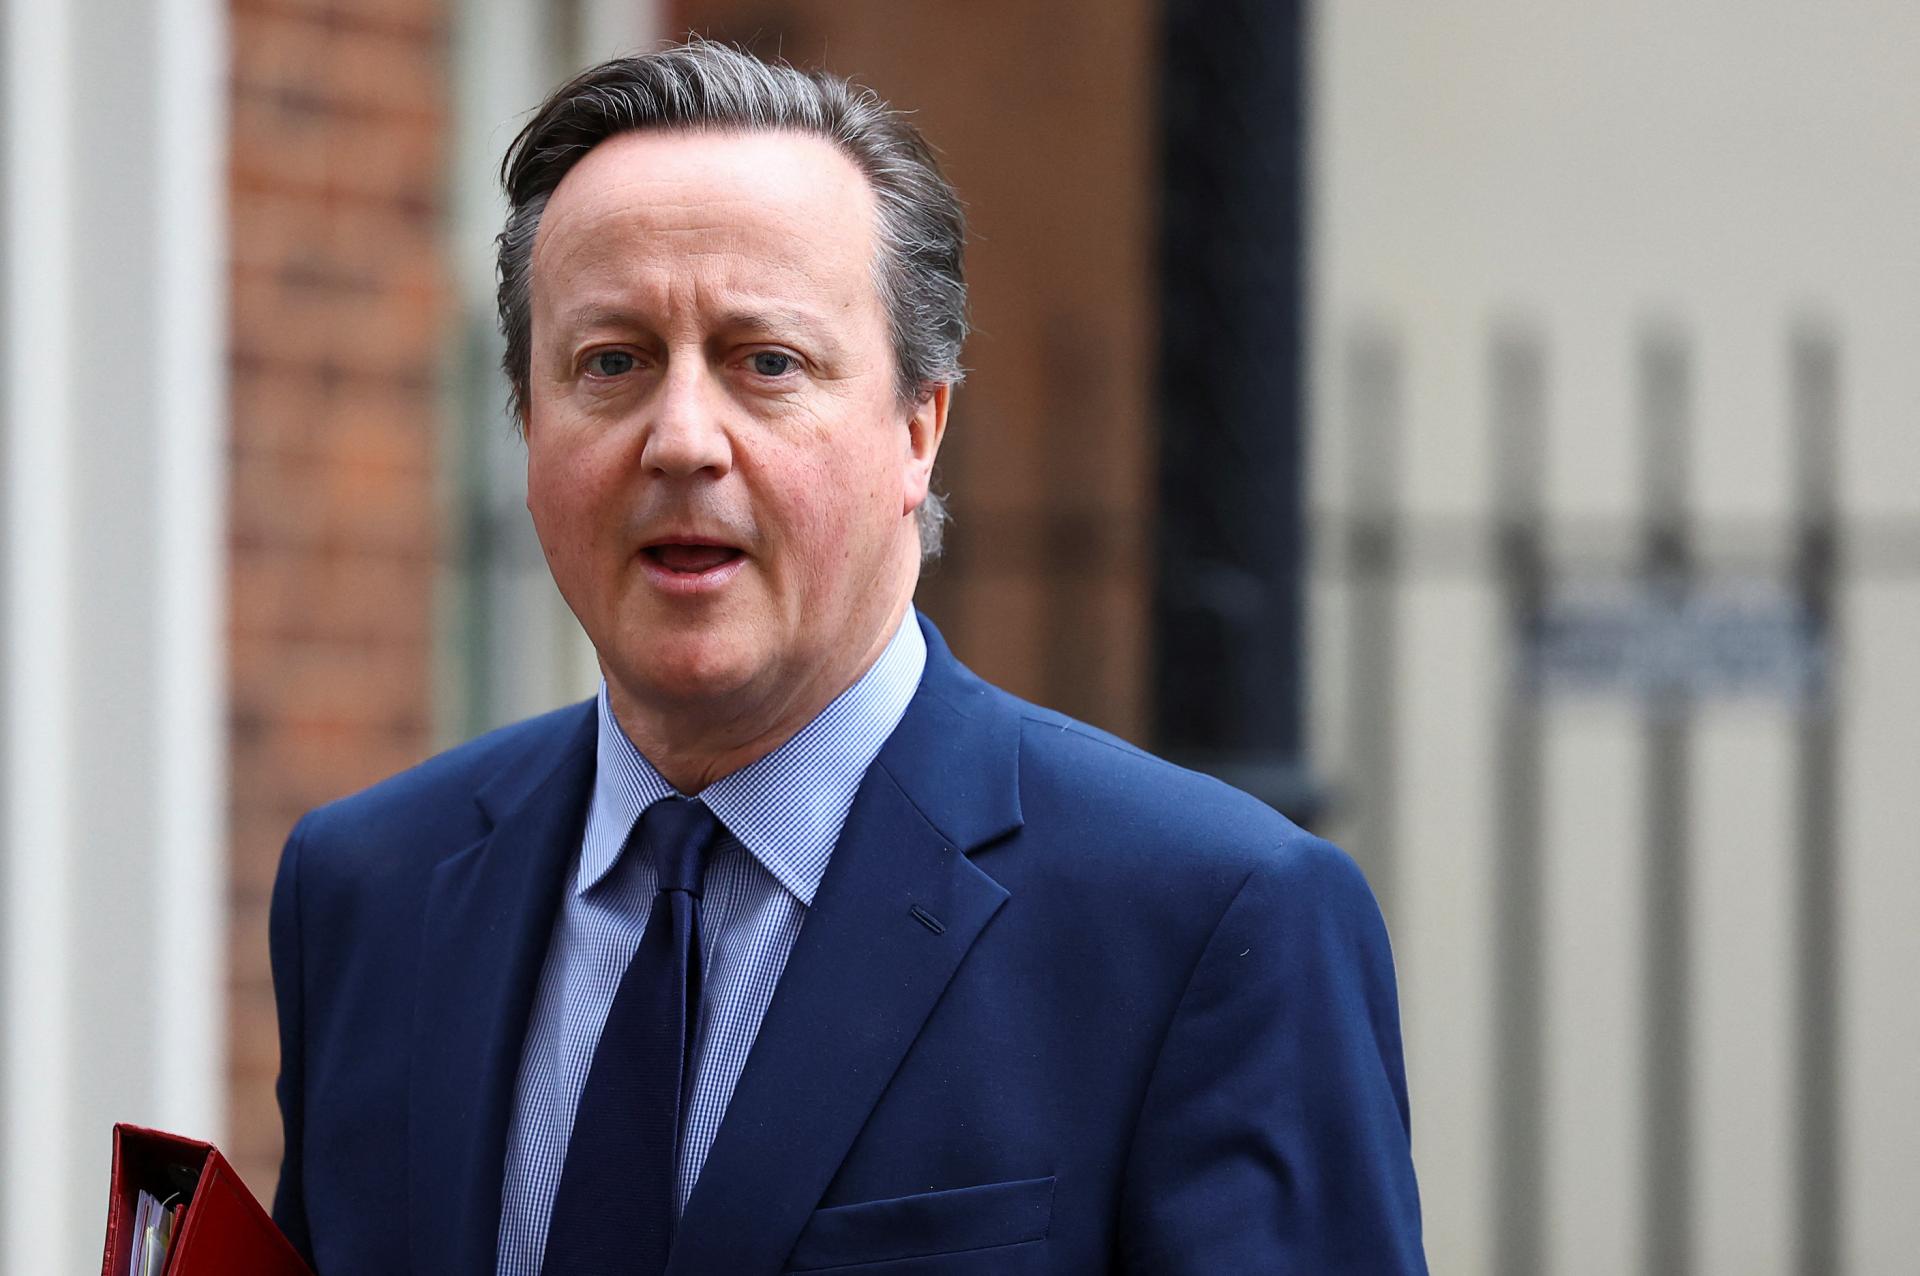 Cameron žiada členské štáty NATO, aby zvýšili výdavky na obranu